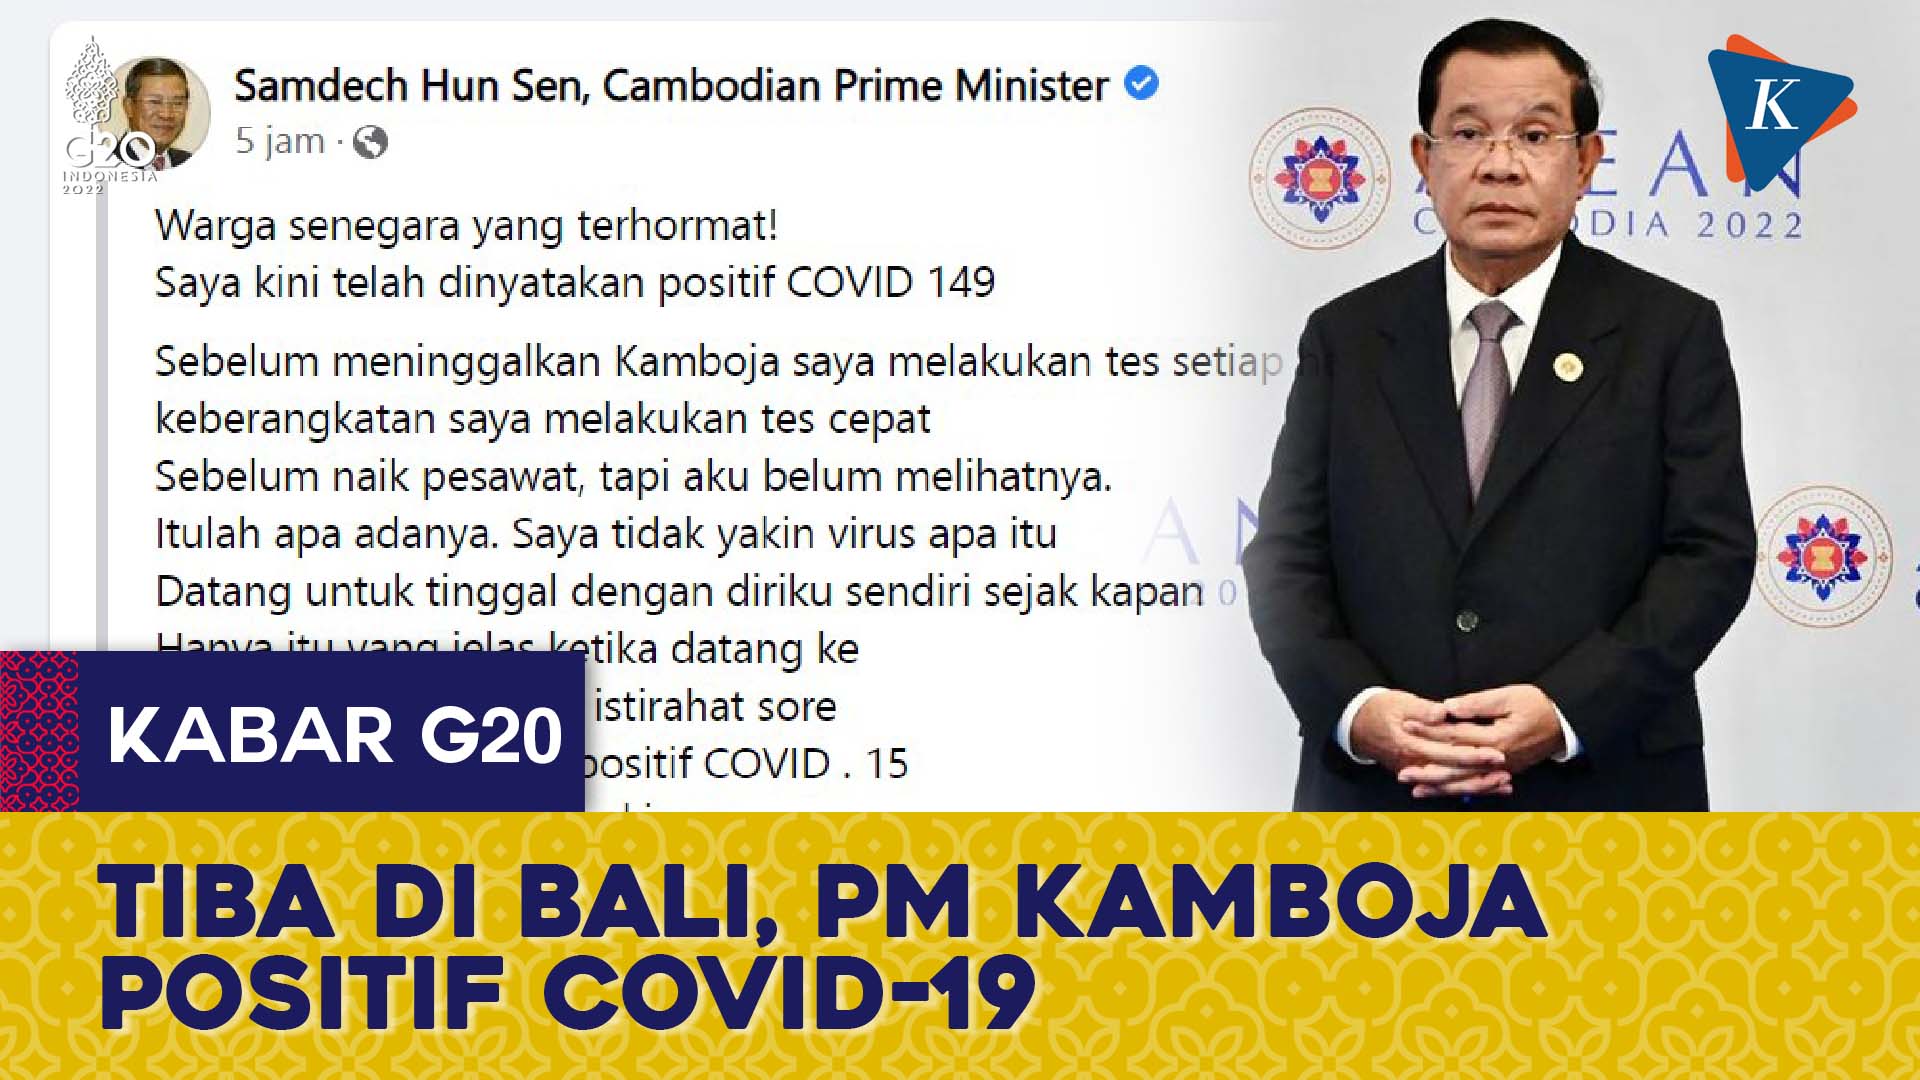 PM Kamboja Positif Covid-19 Saat Tiba di Bali, Terpaksa Batalkan Sejumlah Pertemuan